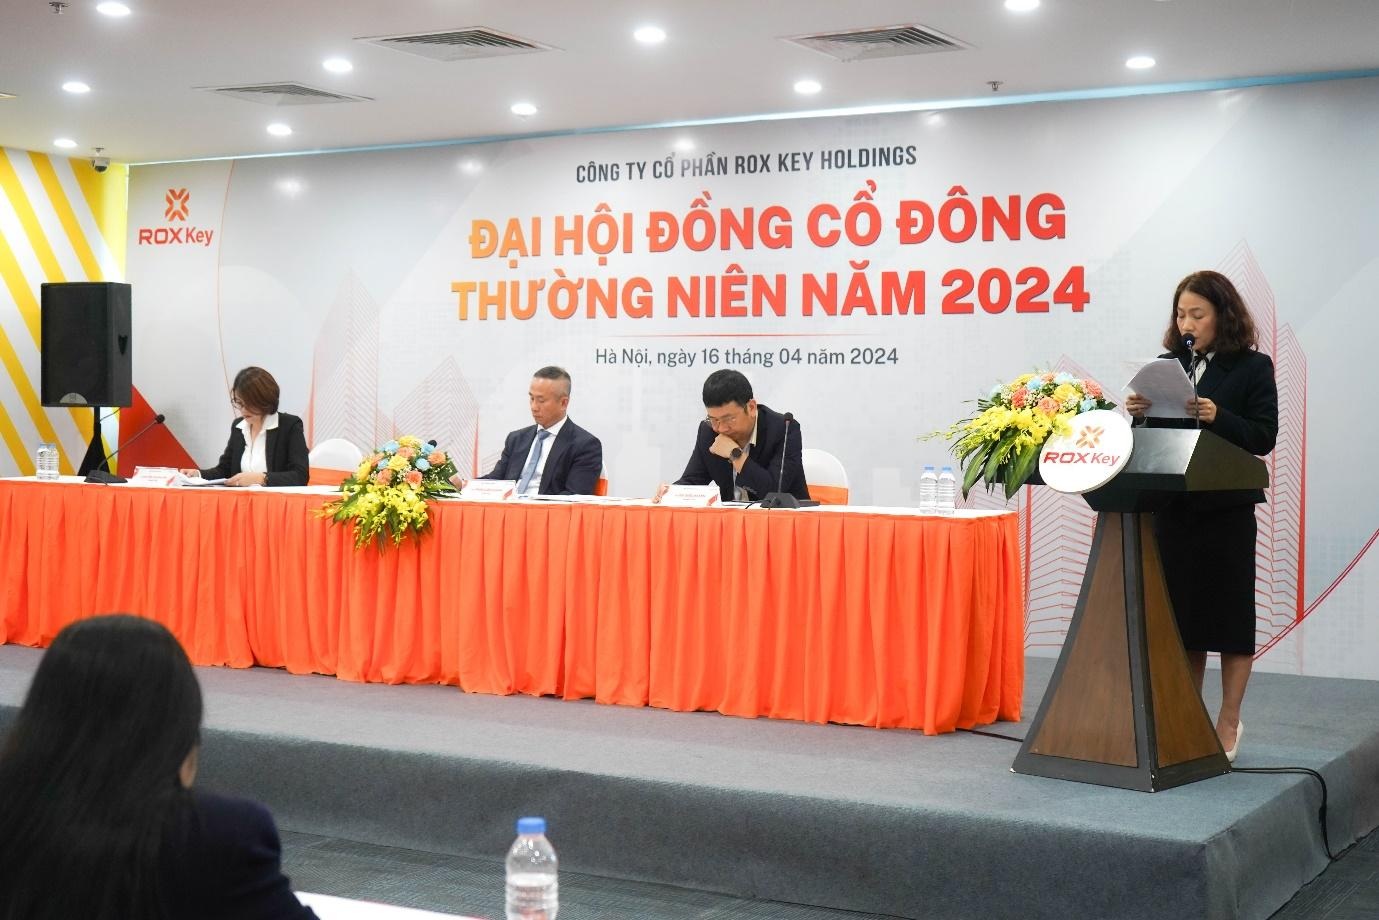 Đại hội nghe báo cáo về kết quả kinh doanh của TN1 trong năm 2023 và kế hoạch năm 2024.